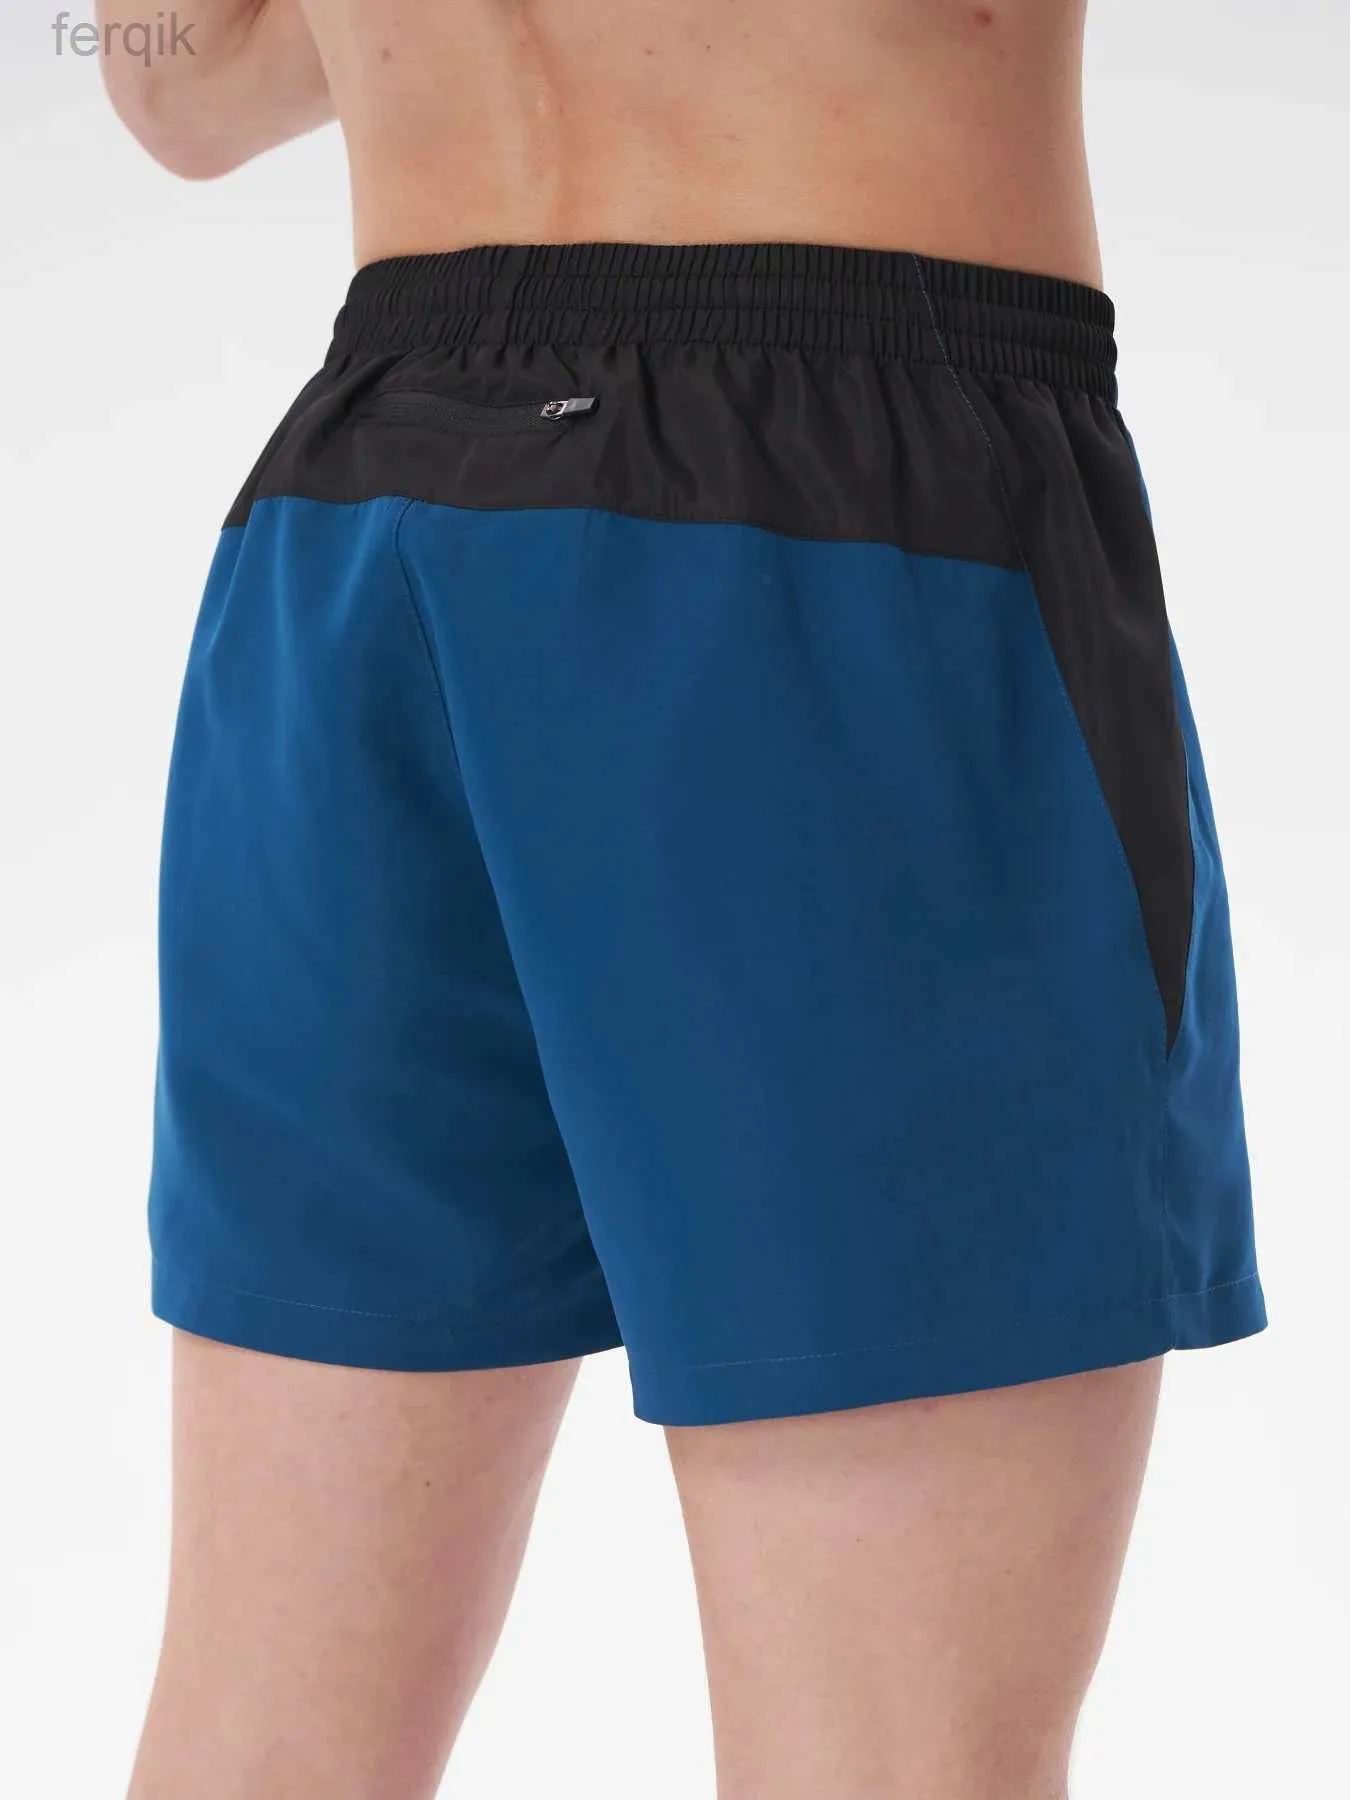 Shorts masculins pour hommes courants shorts lâches légers confortables sport sport shorts d'entraînement shorts actifs décontractés pour hommes courts pantalon zipper poche D240426